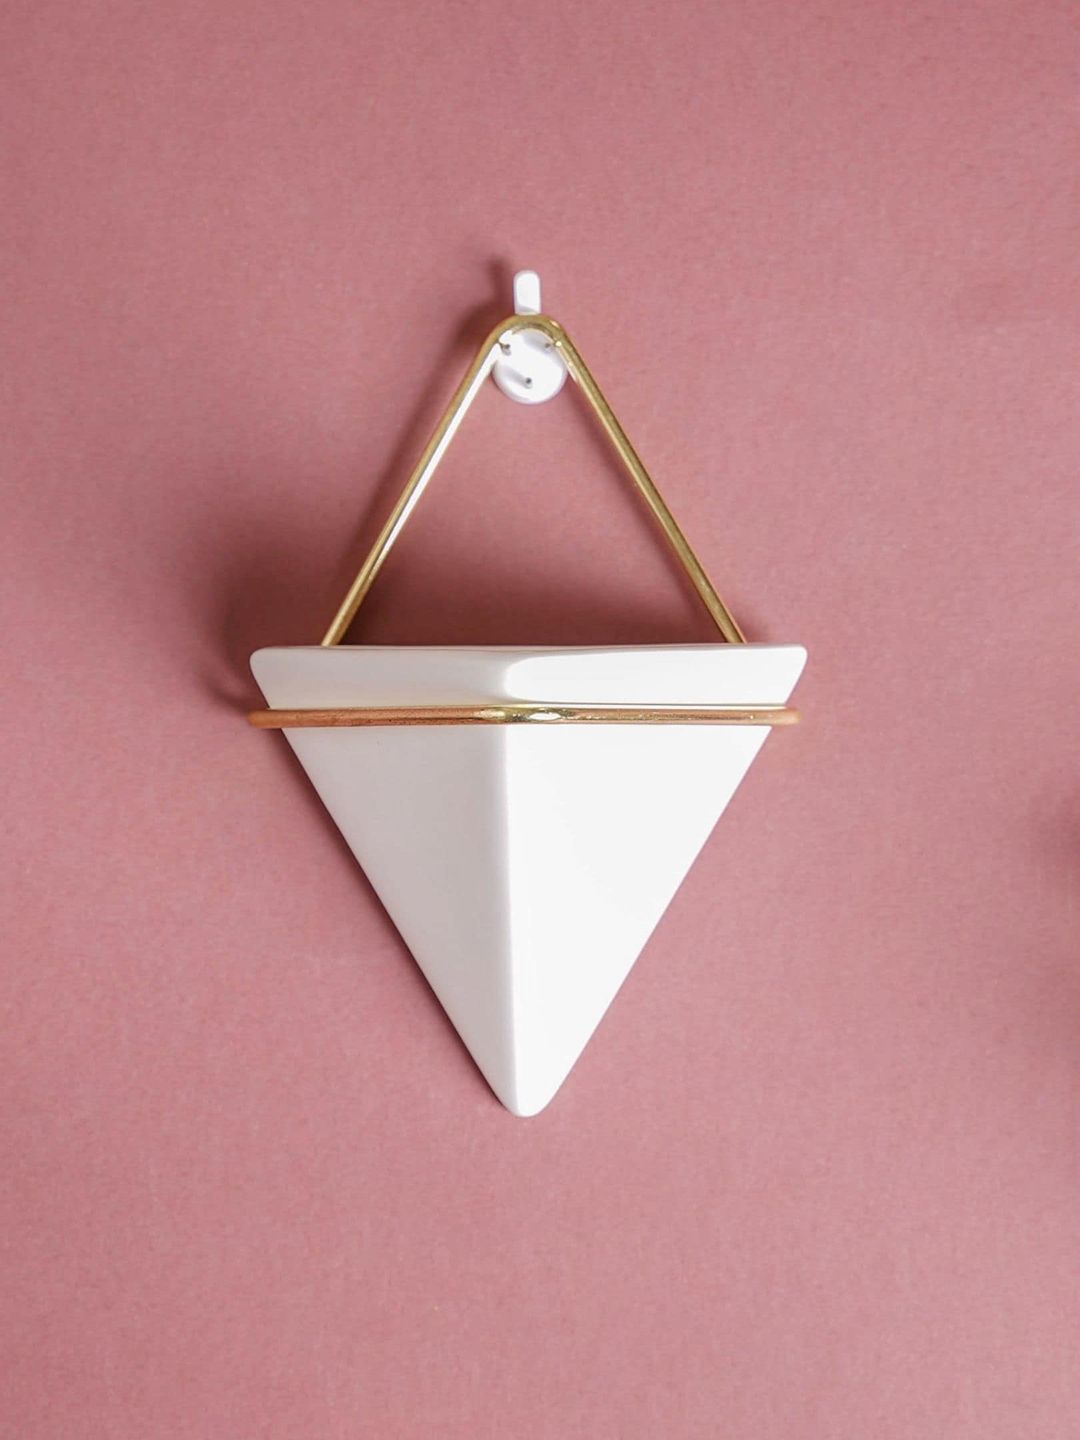 Nestasia White & Gold-Toned Solid Triangular Ceramic Planters Price in India